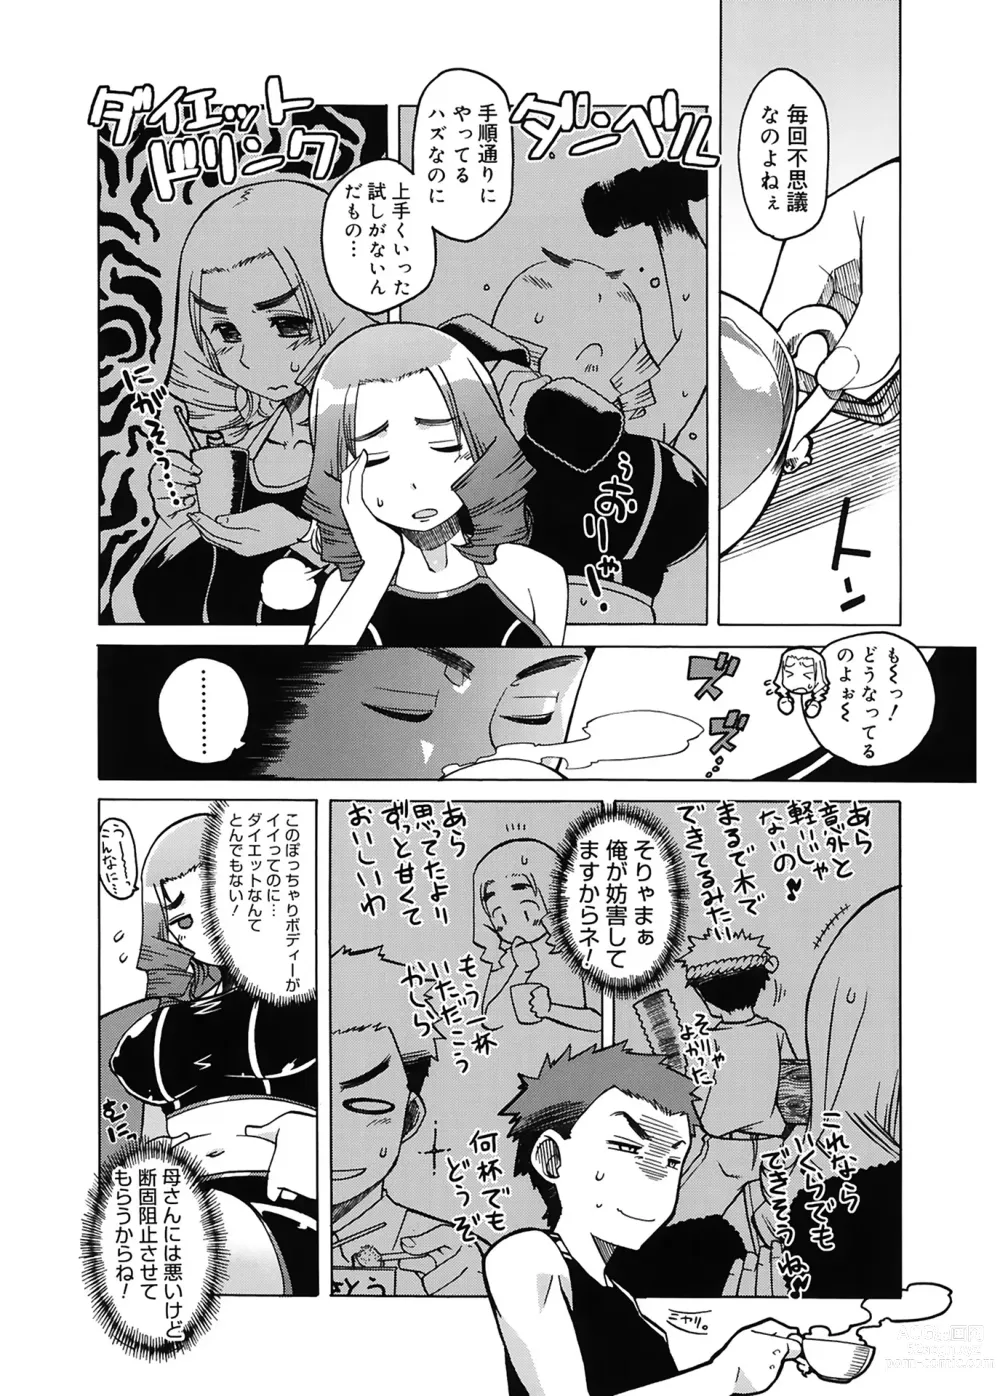 Page 6 of manga Mamma Mia!